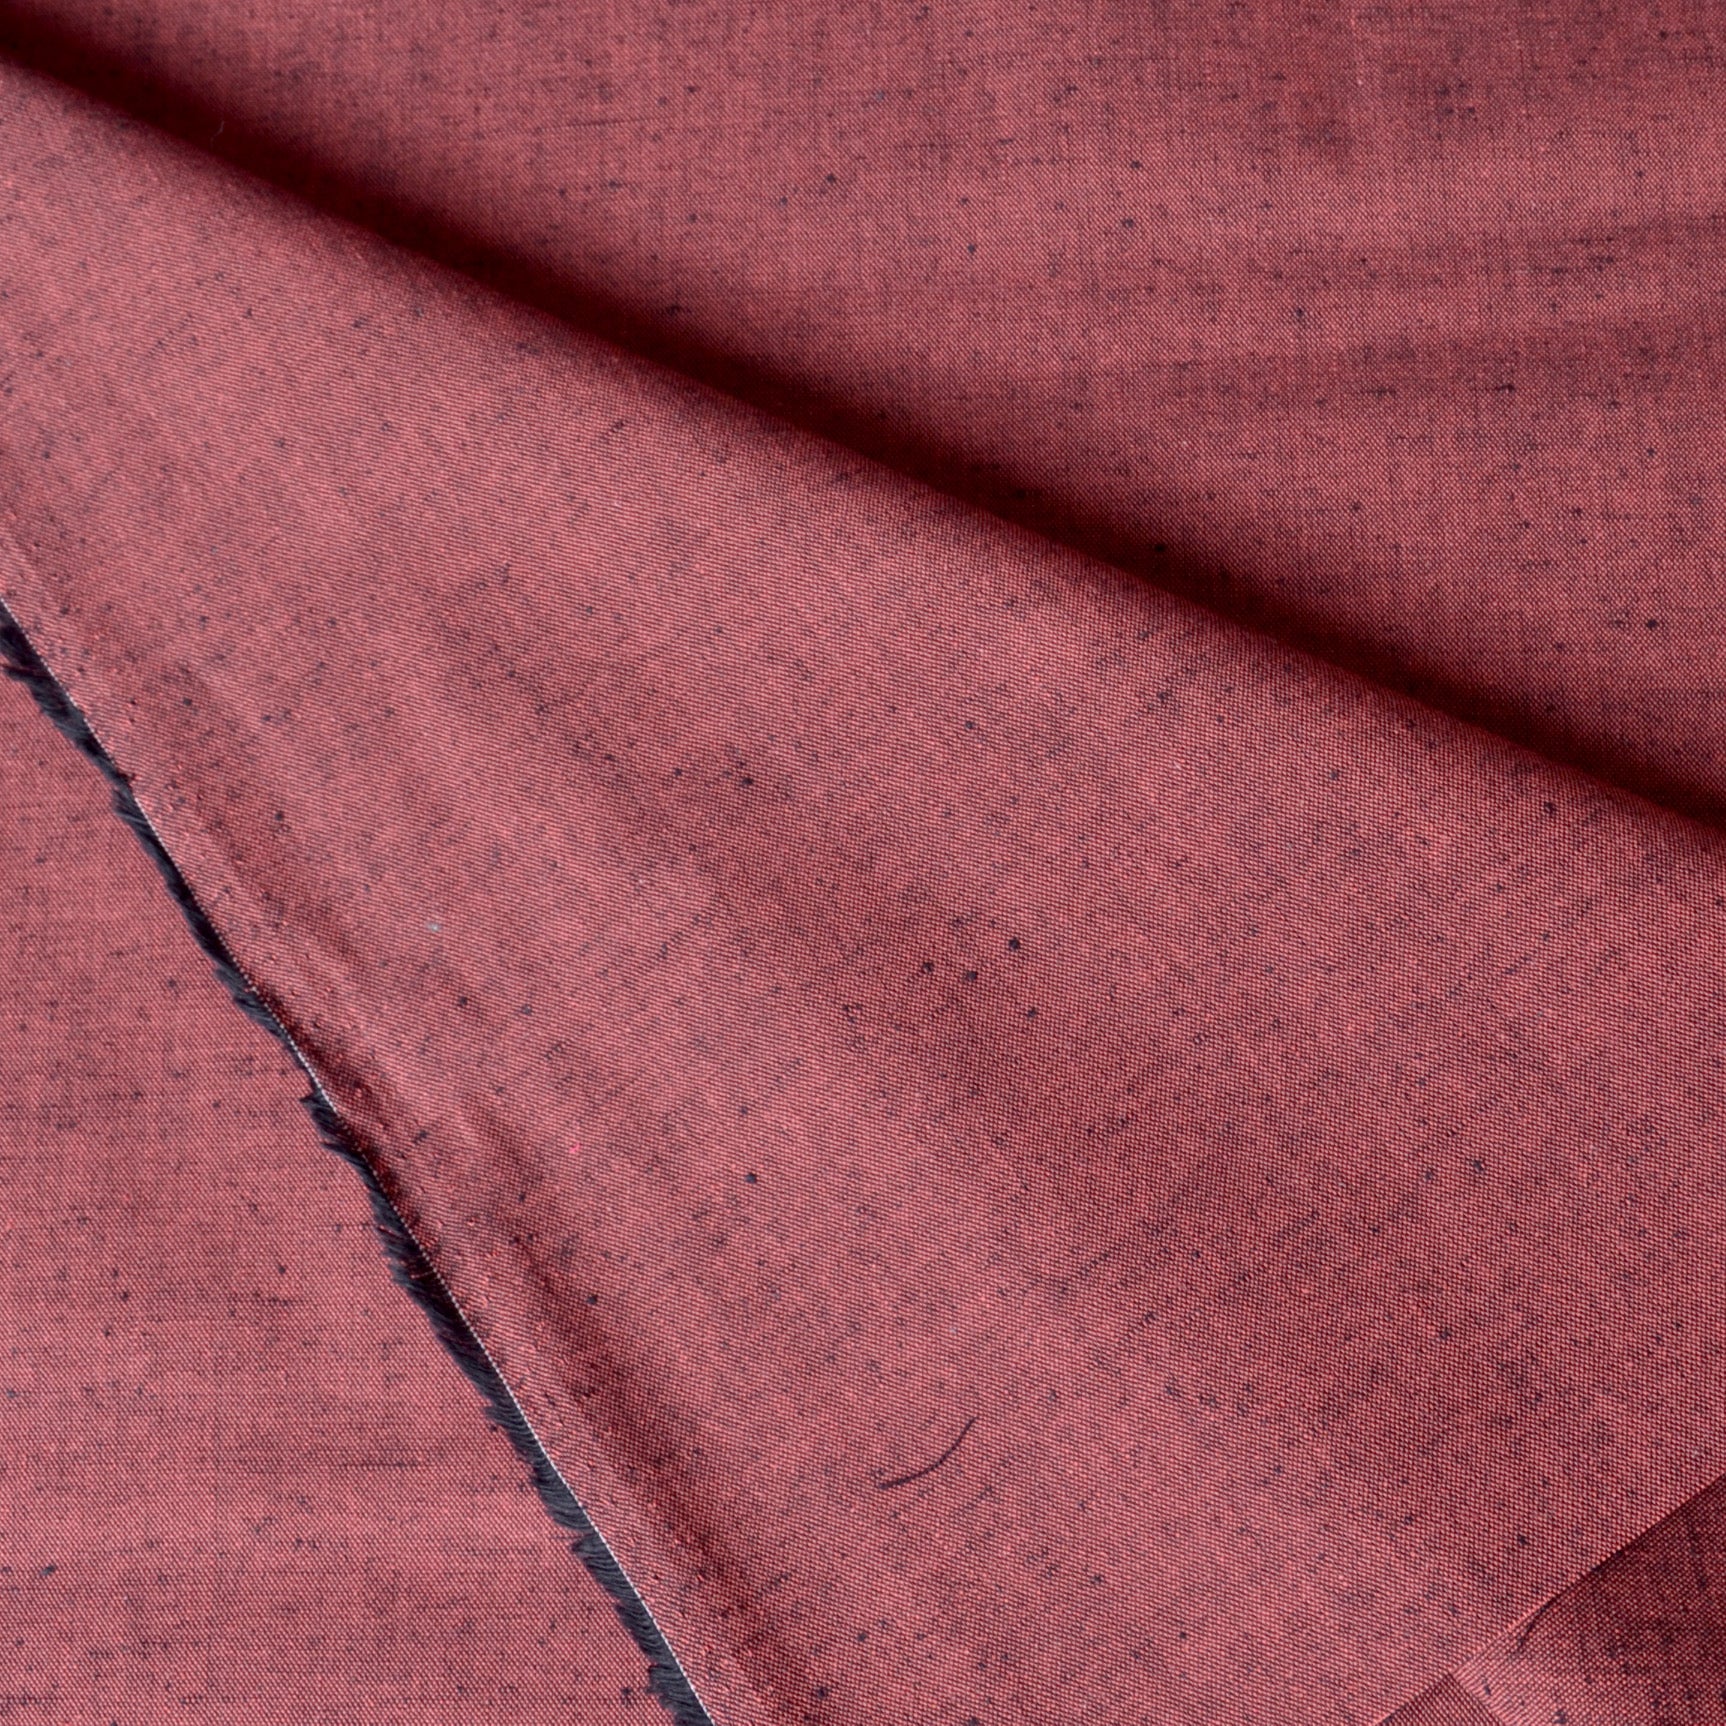 Tsumugi Cotton Fabric, Red Brown